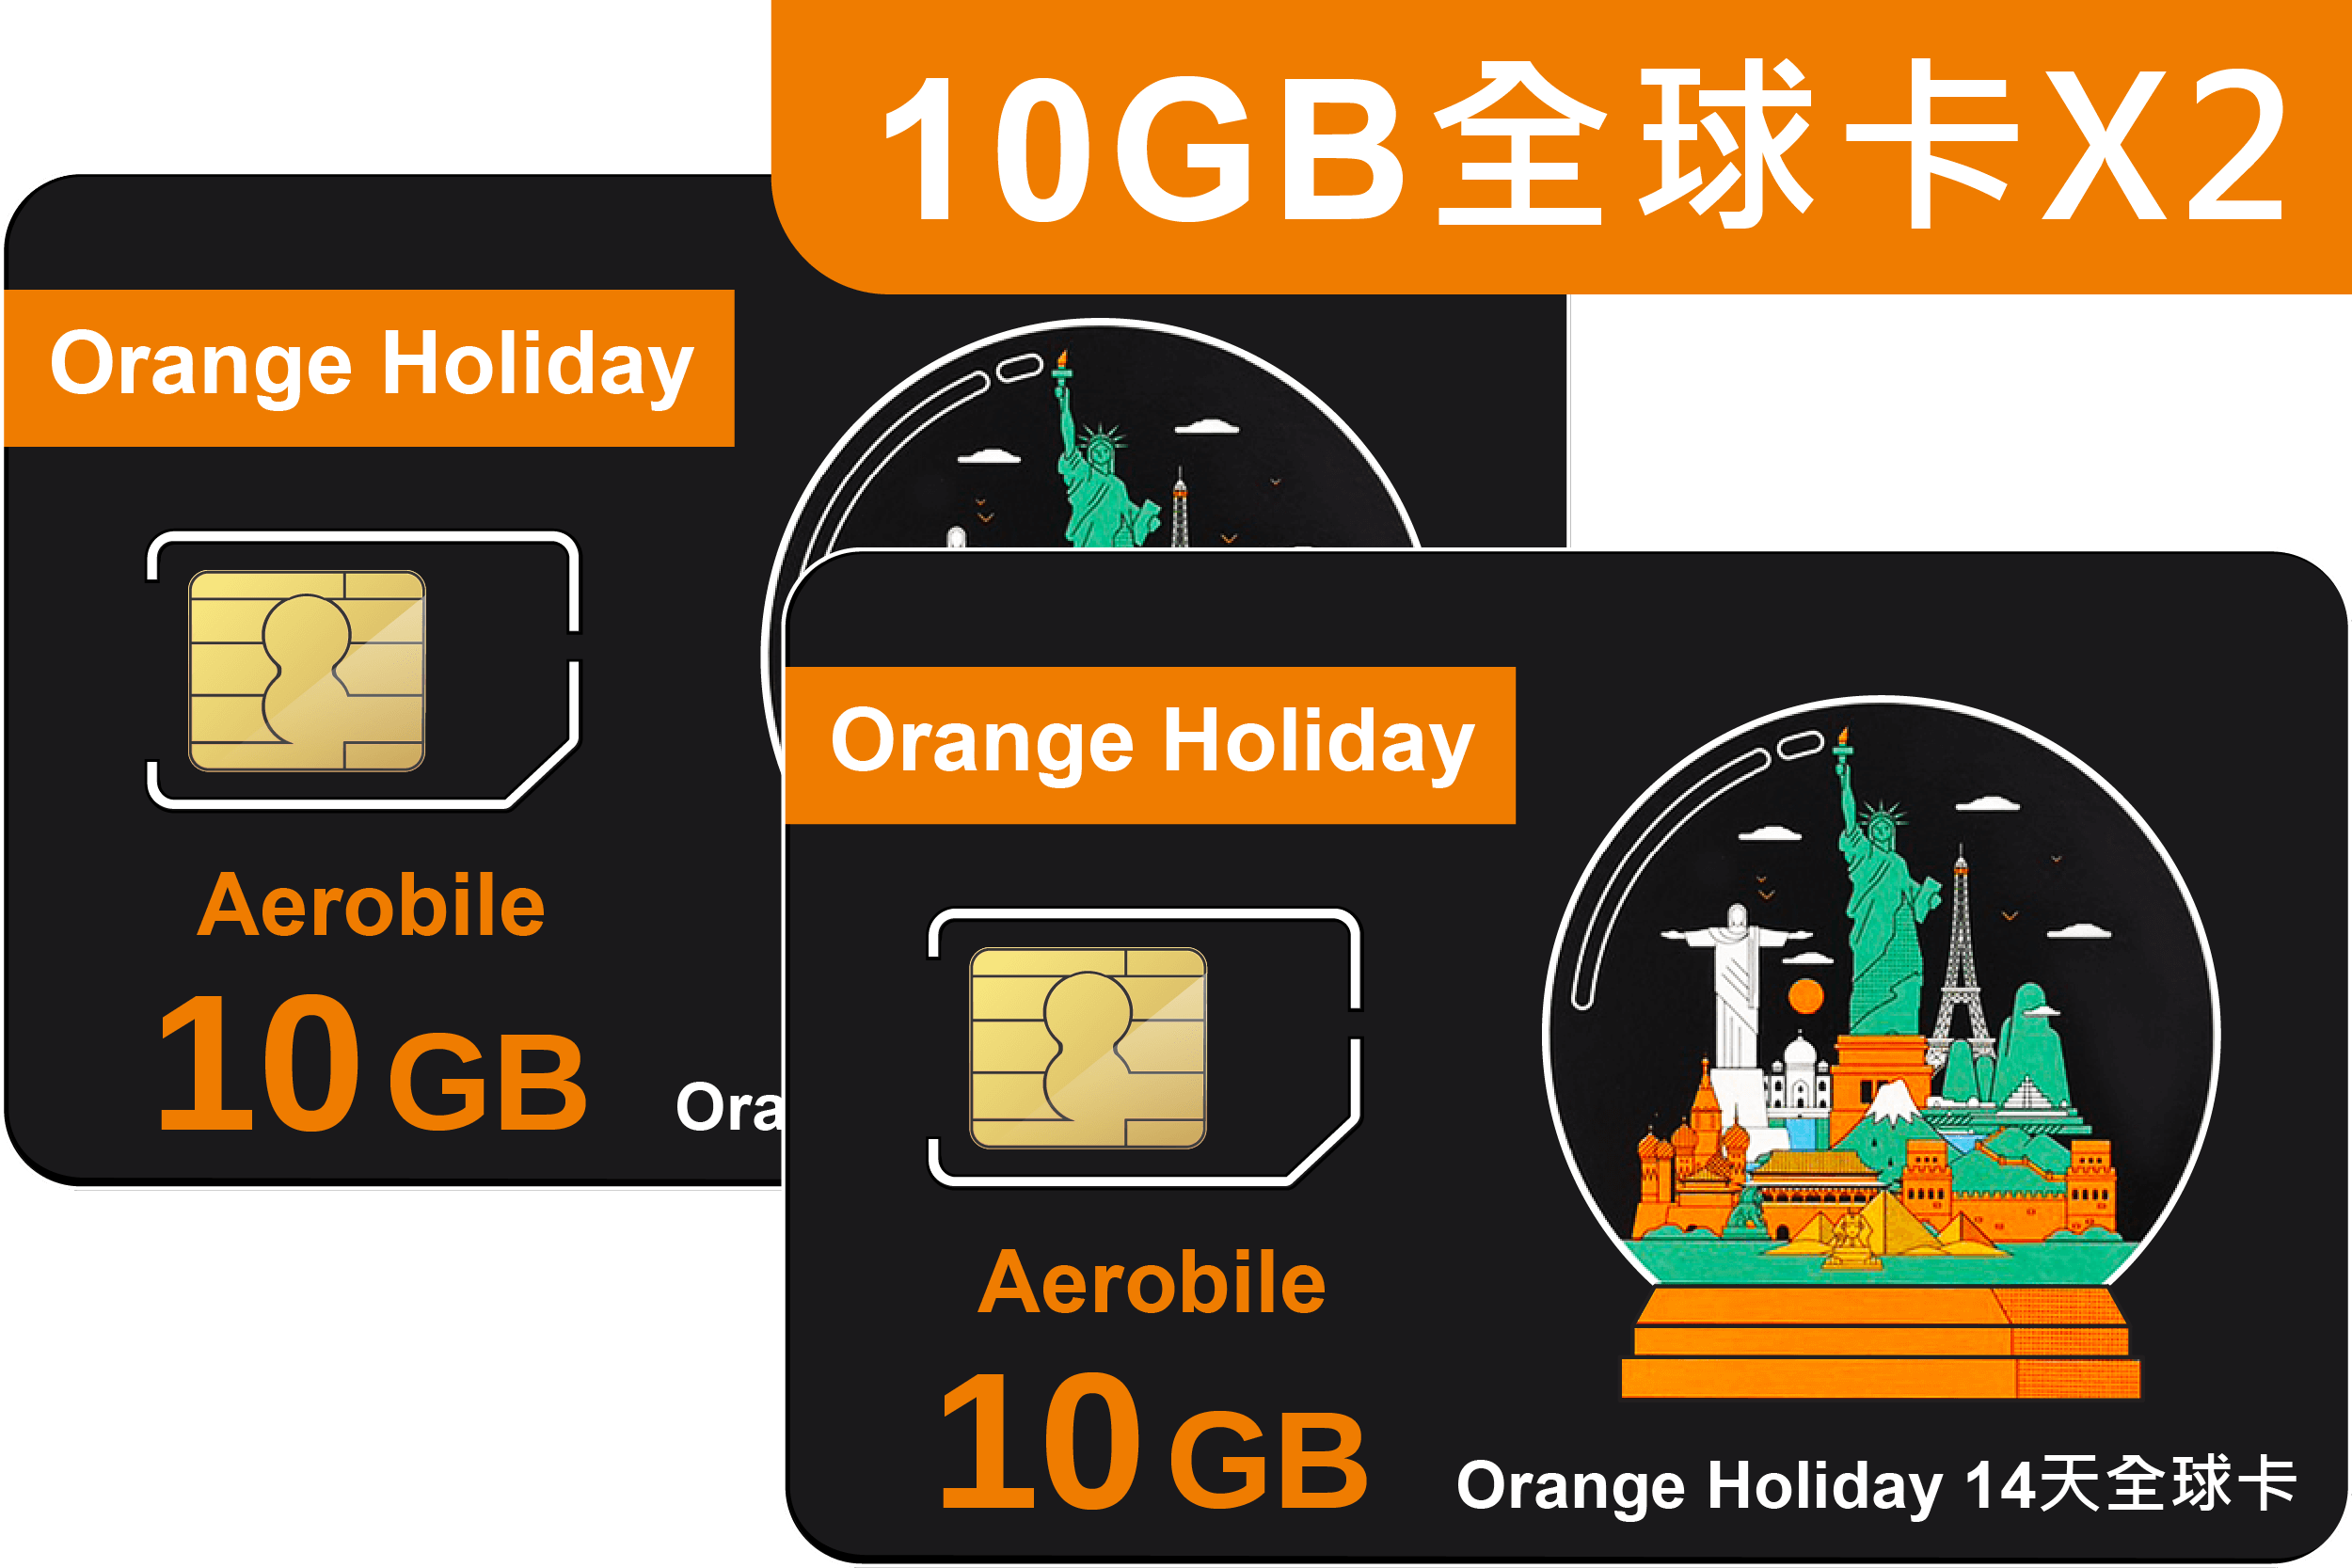 一次買兩張! 全球上網卡-Orange Holiday World全球多國預付卡-共10GB/14天X2張上網暢行全球(world x 2)